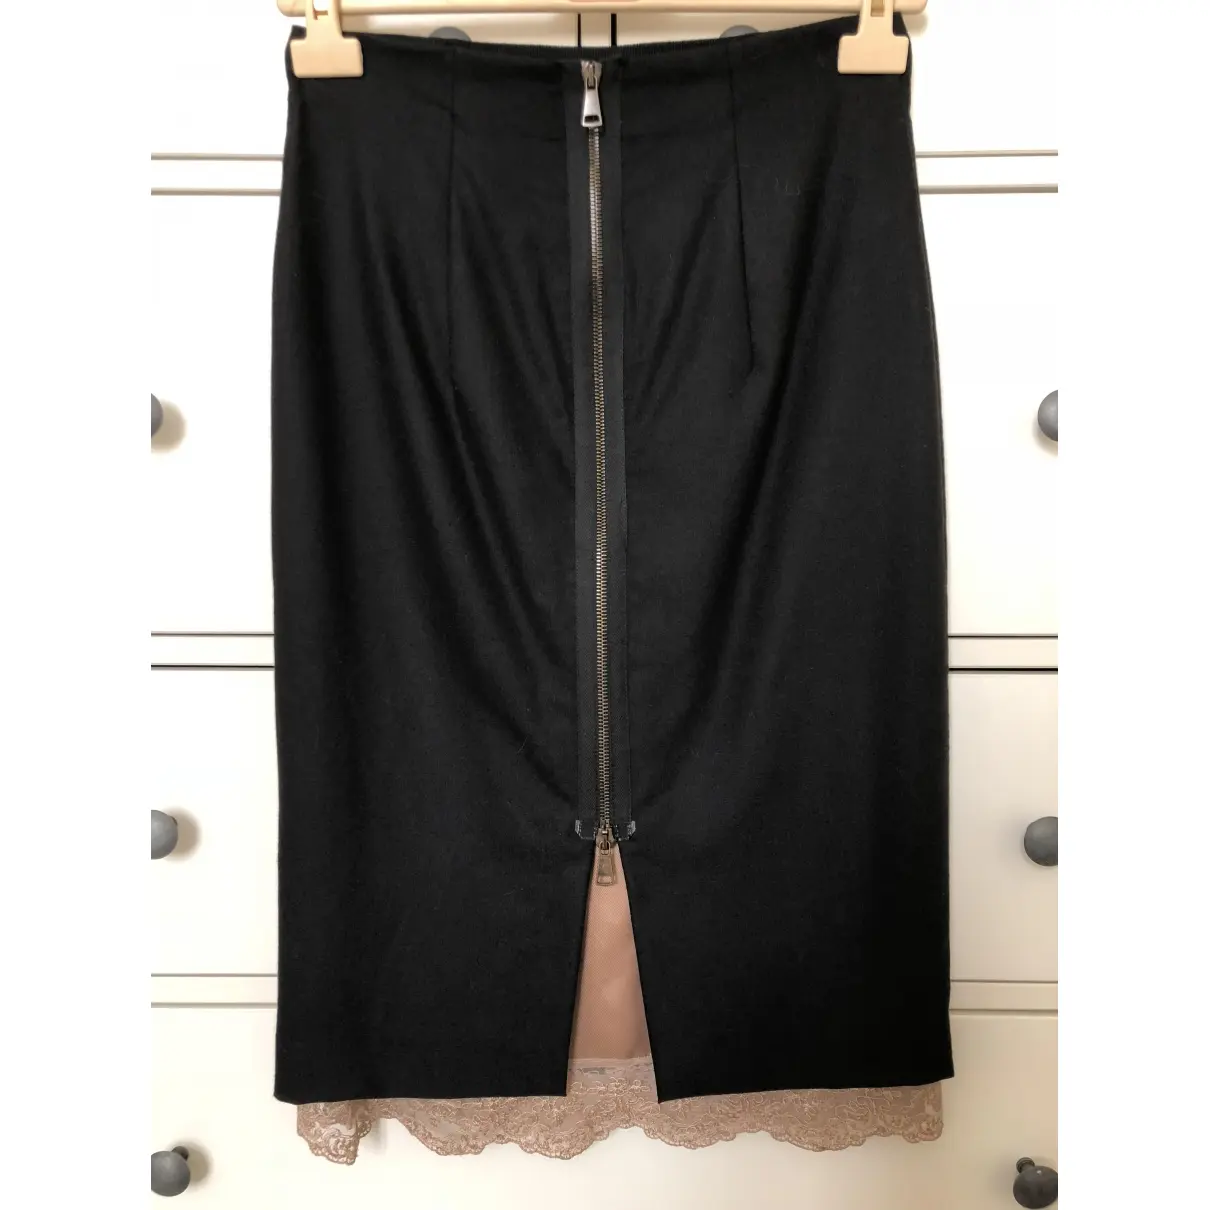 Erika Cavallini Wool mid-length skirt for sale